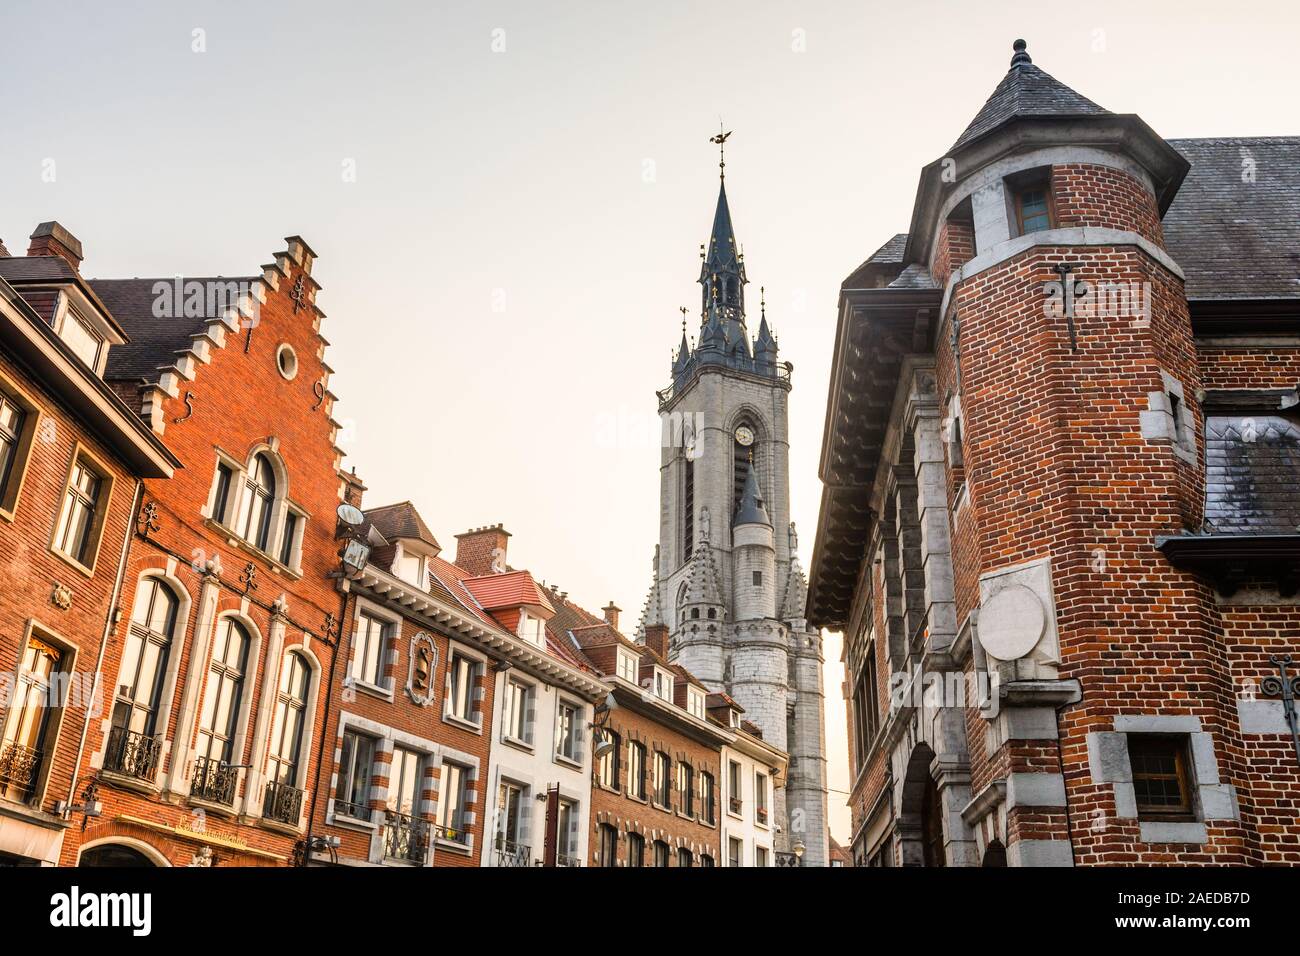 Haut clocher médiéval qui s'élève au-dessus de la rue avec de vieilles maisons européennes, Tournai, Belgique, Région Wallonne Banque D'Images